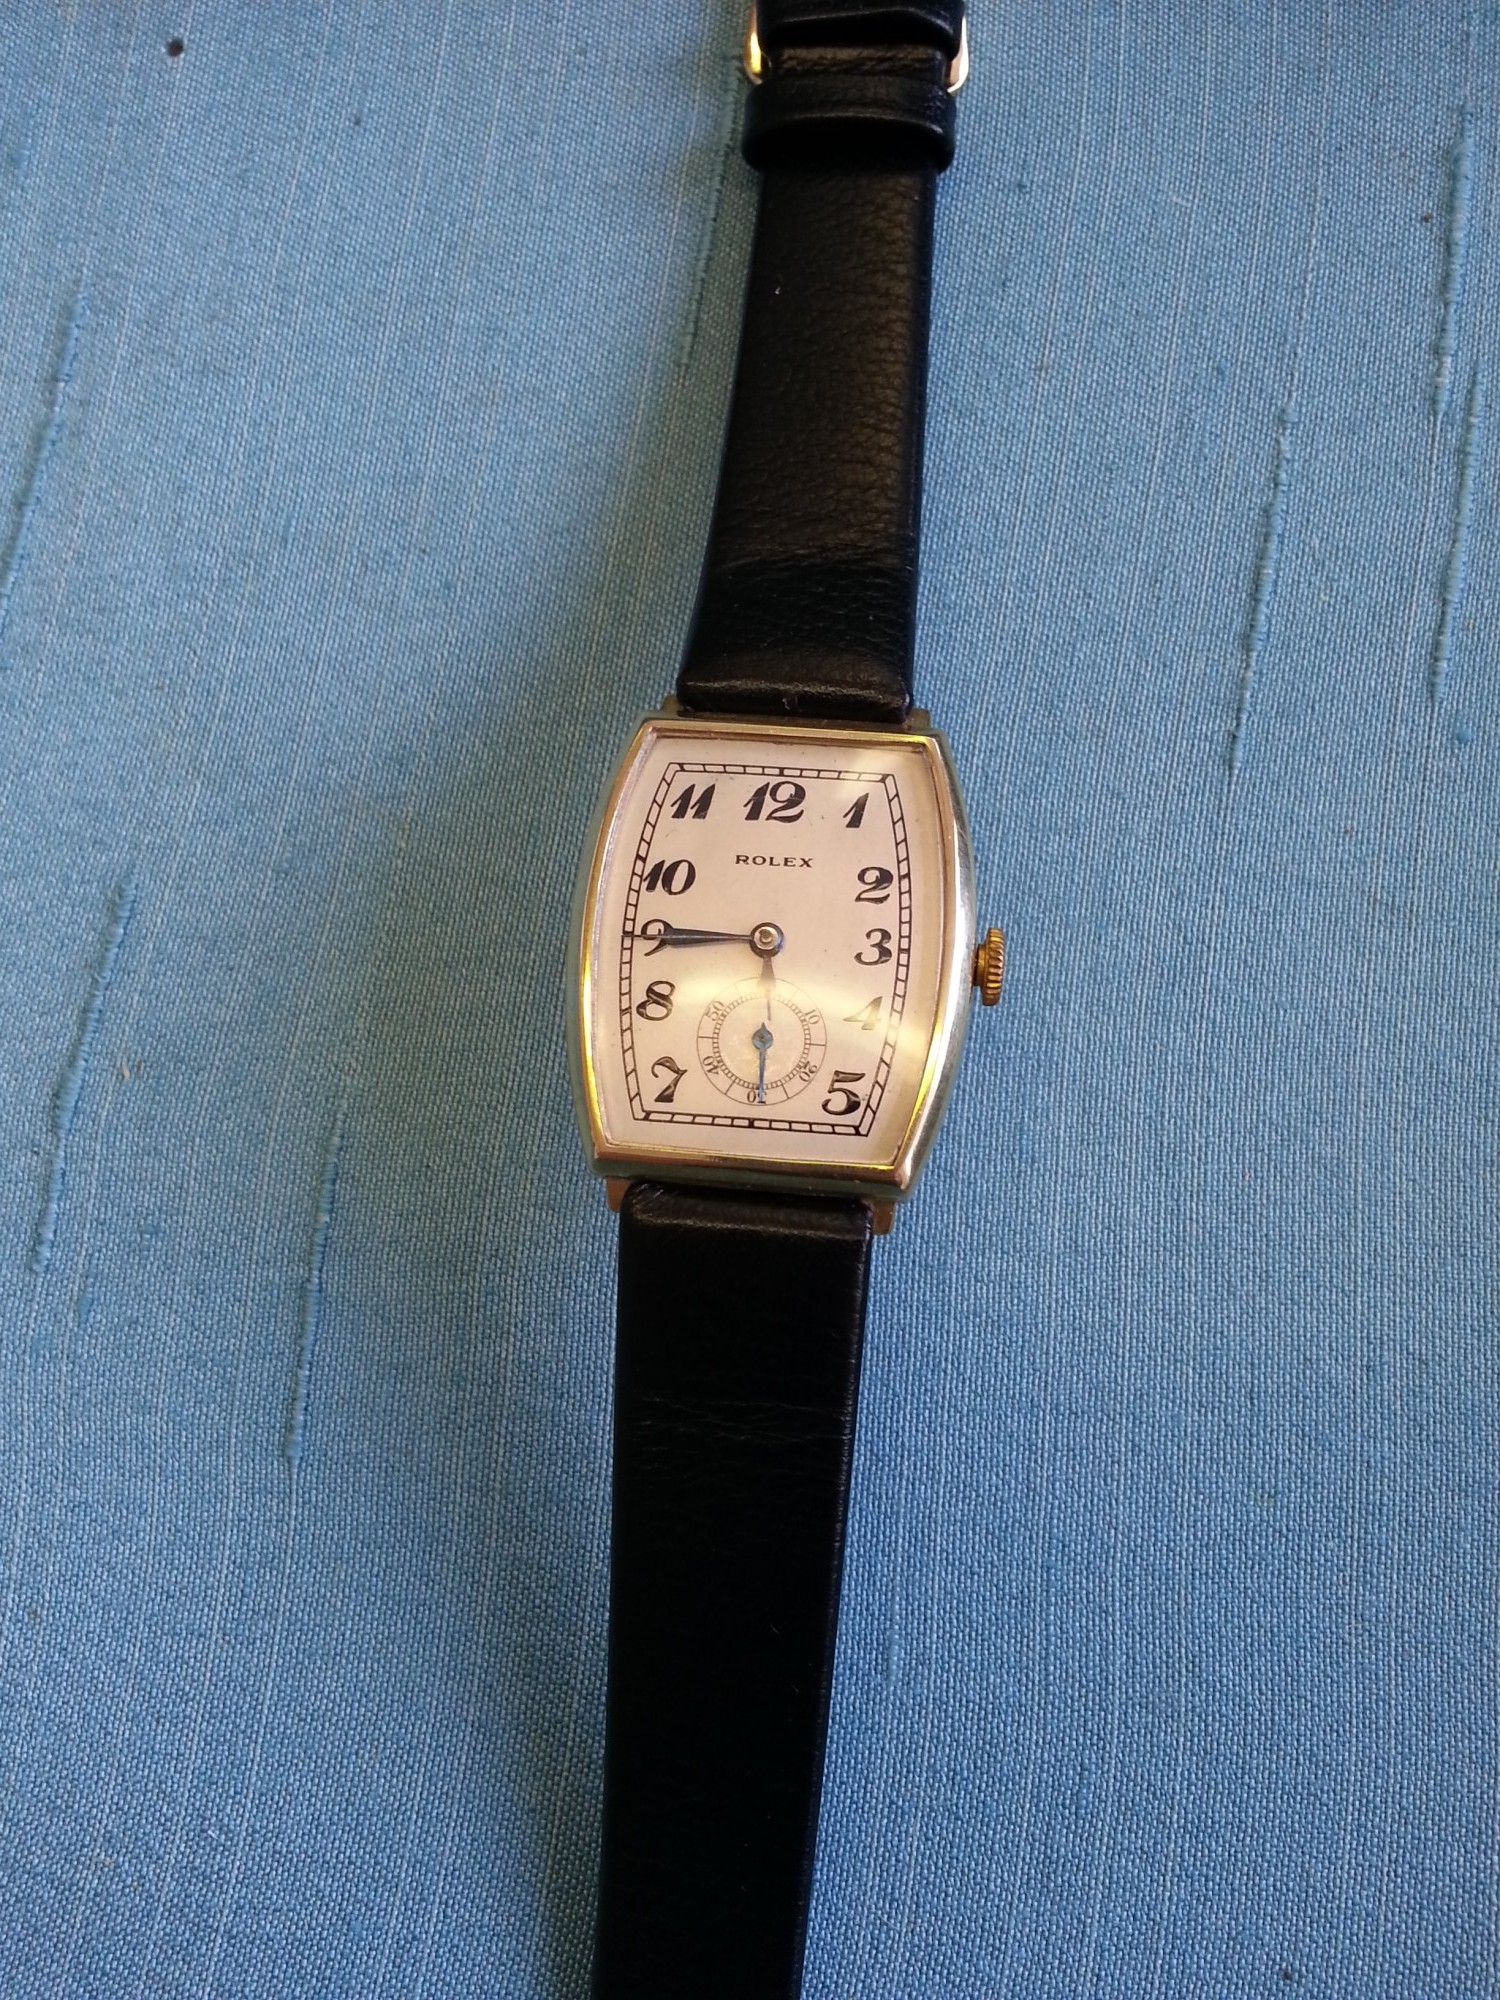 Gents 9ct gold Rolex wristwatch, 1933